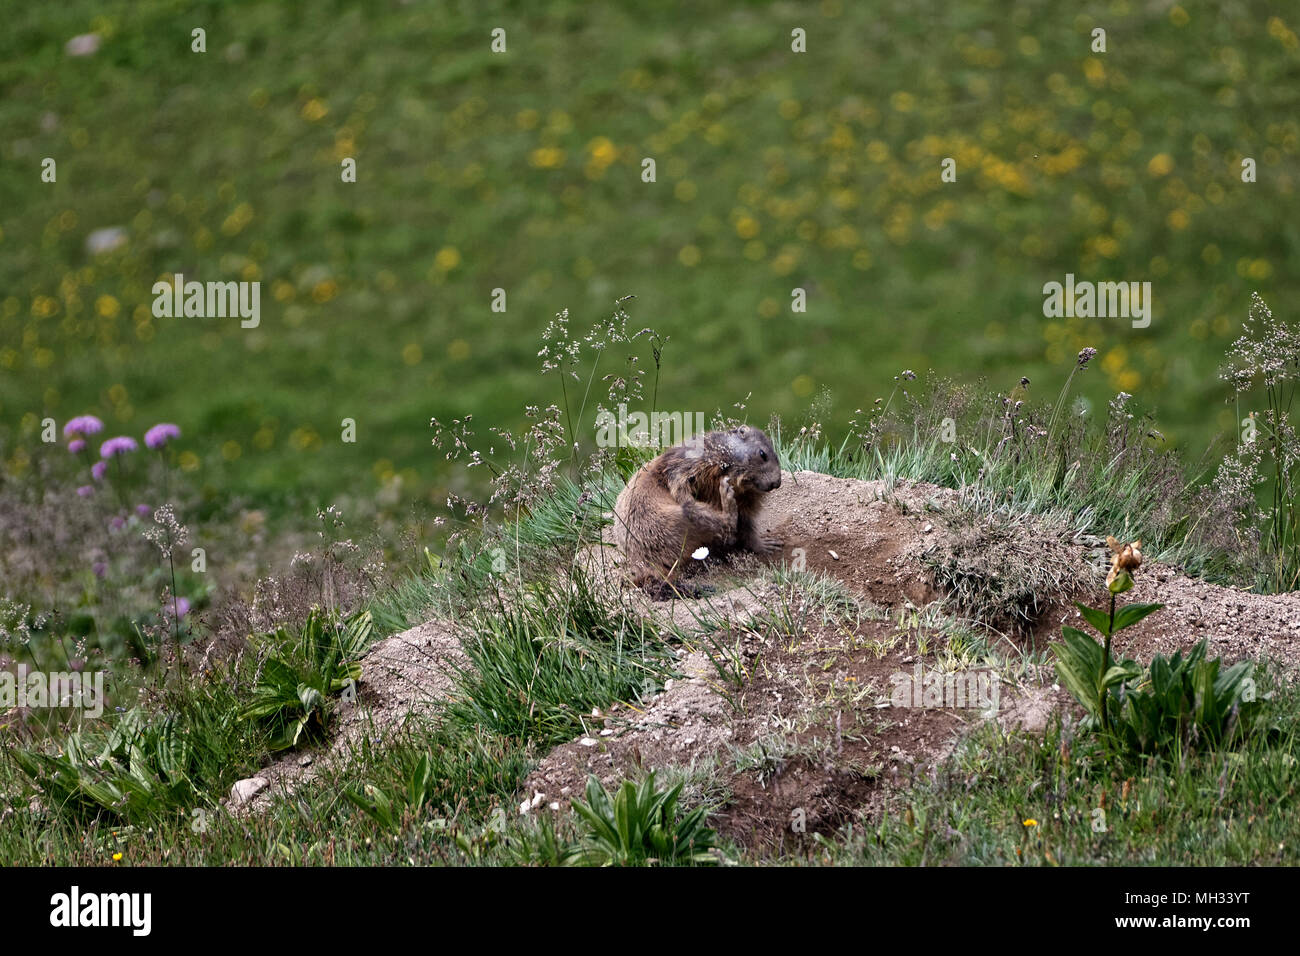 Marmot - Autriche. Murmeltier - Österreich Banque D'Images